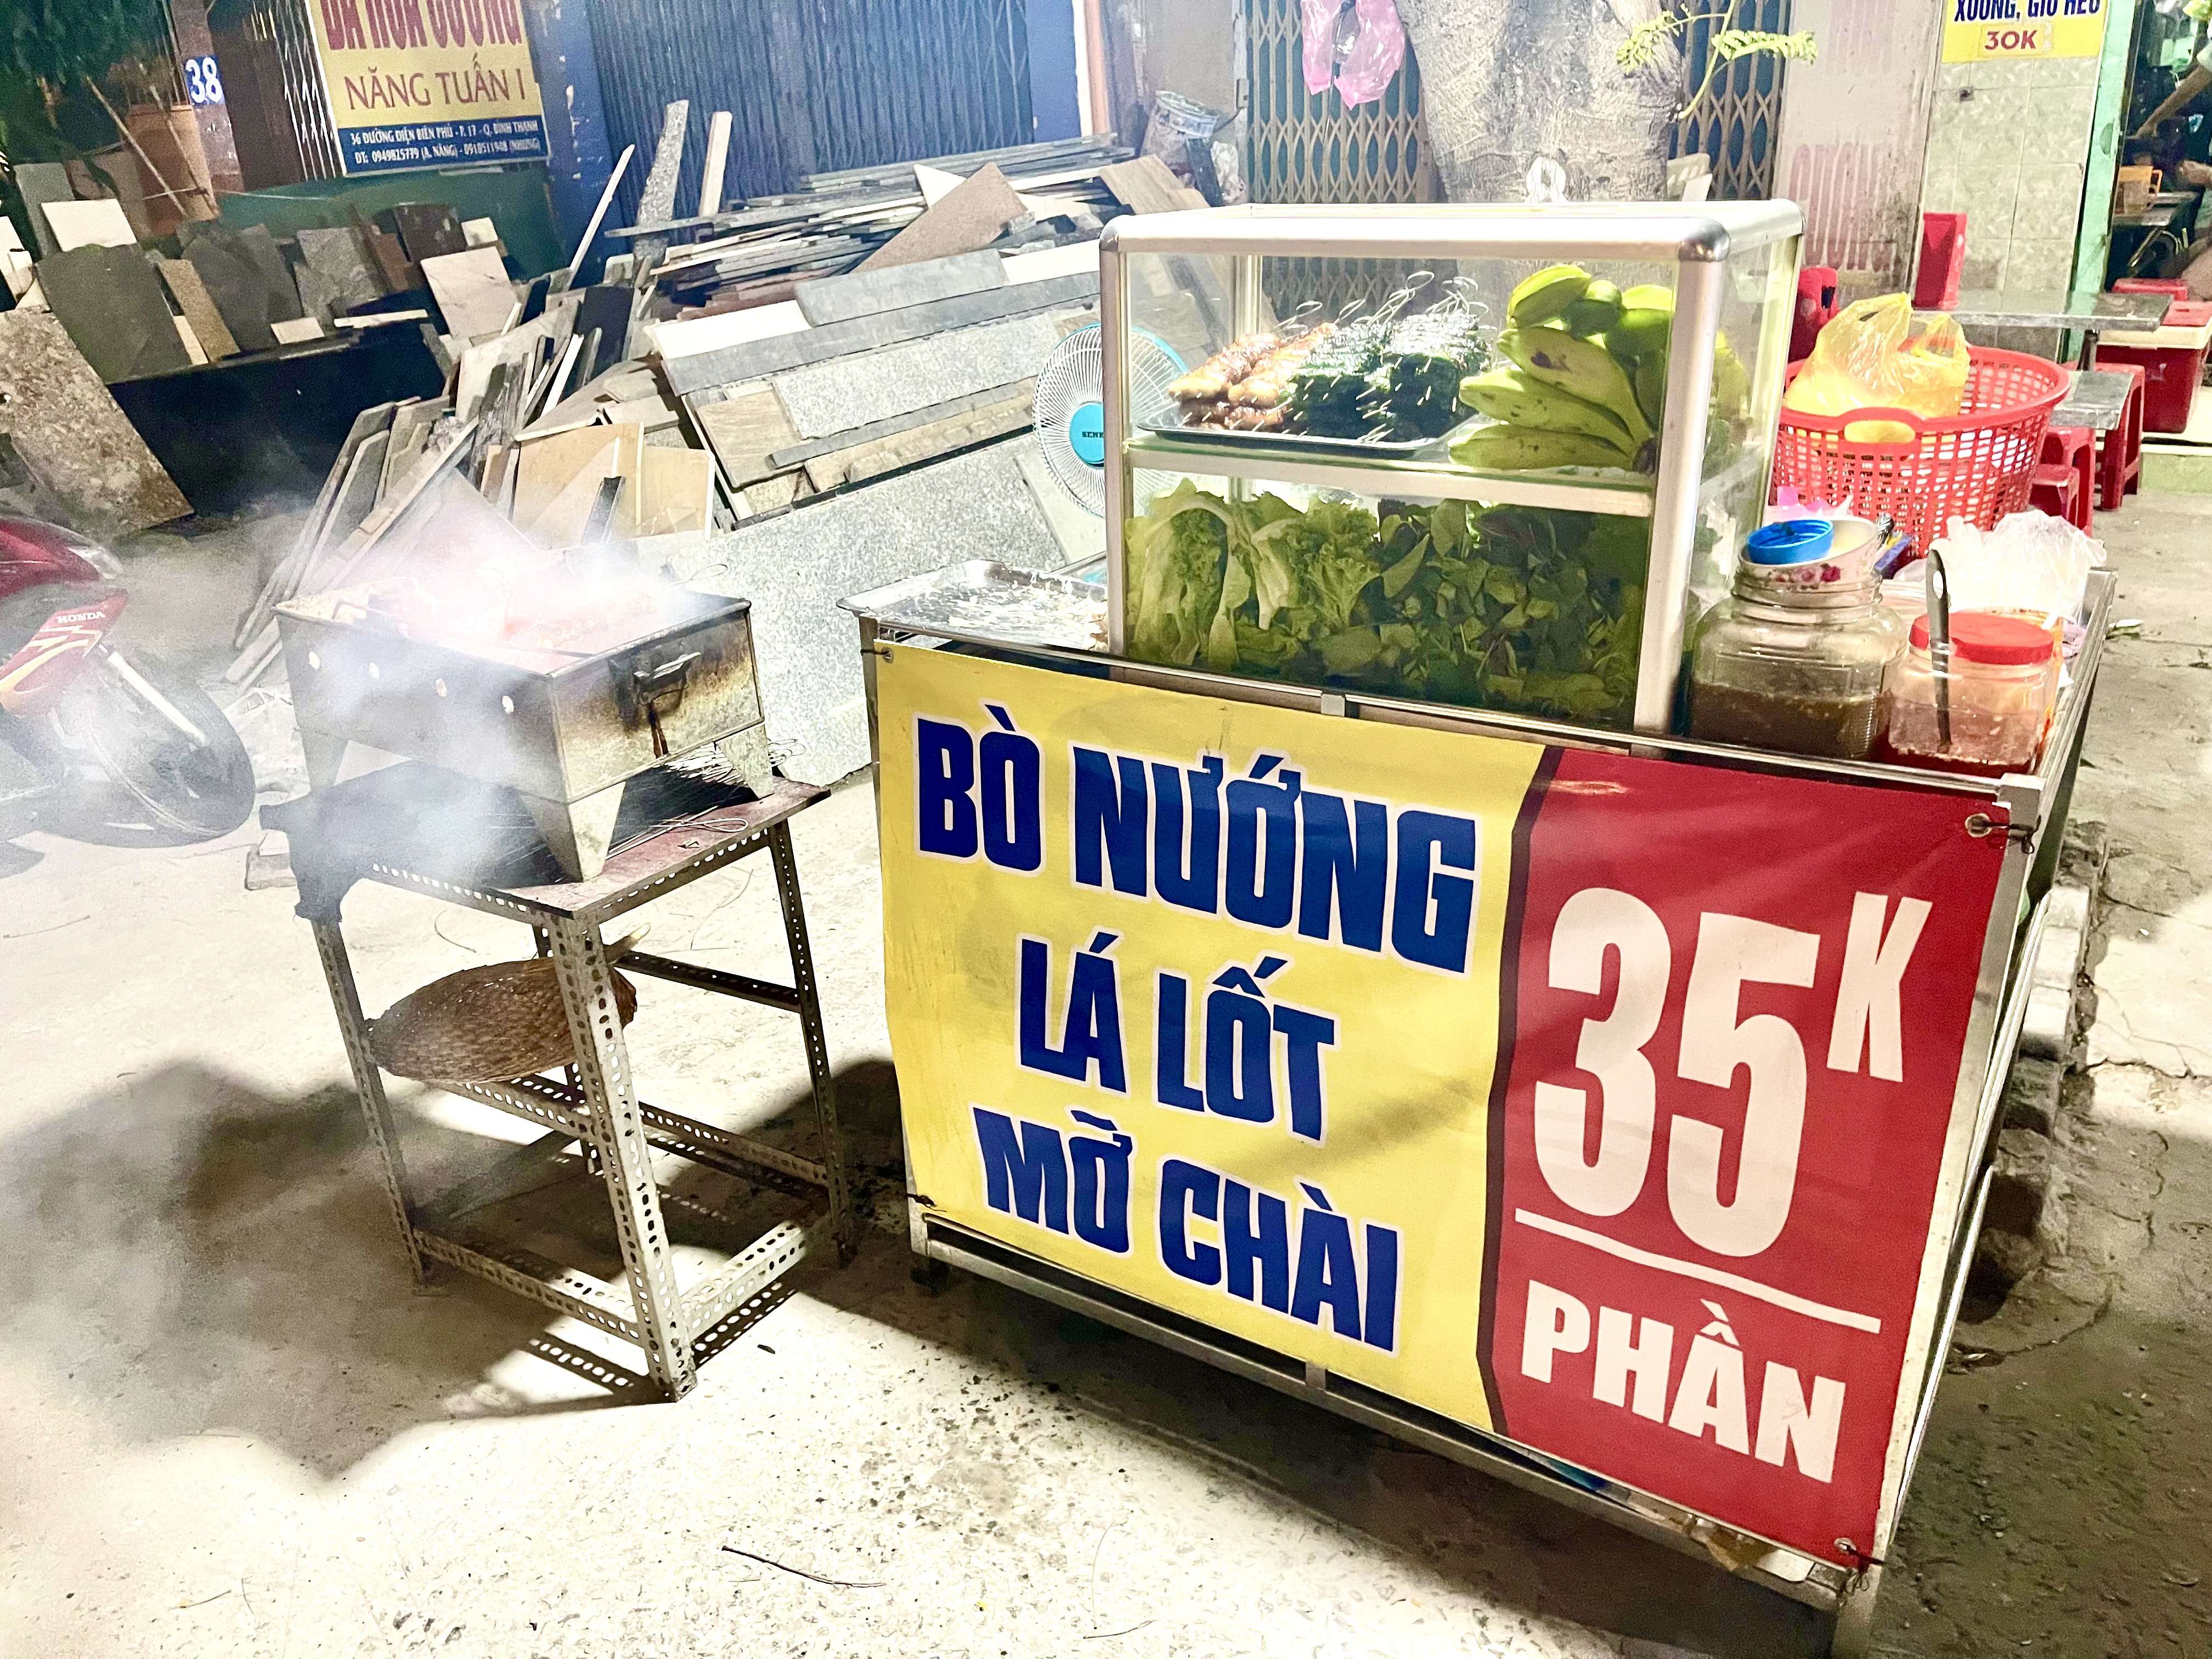 ‘Bò nướng lá lốt, mỡ chài’: The magical favor of beef rolls on the street of Vietnam